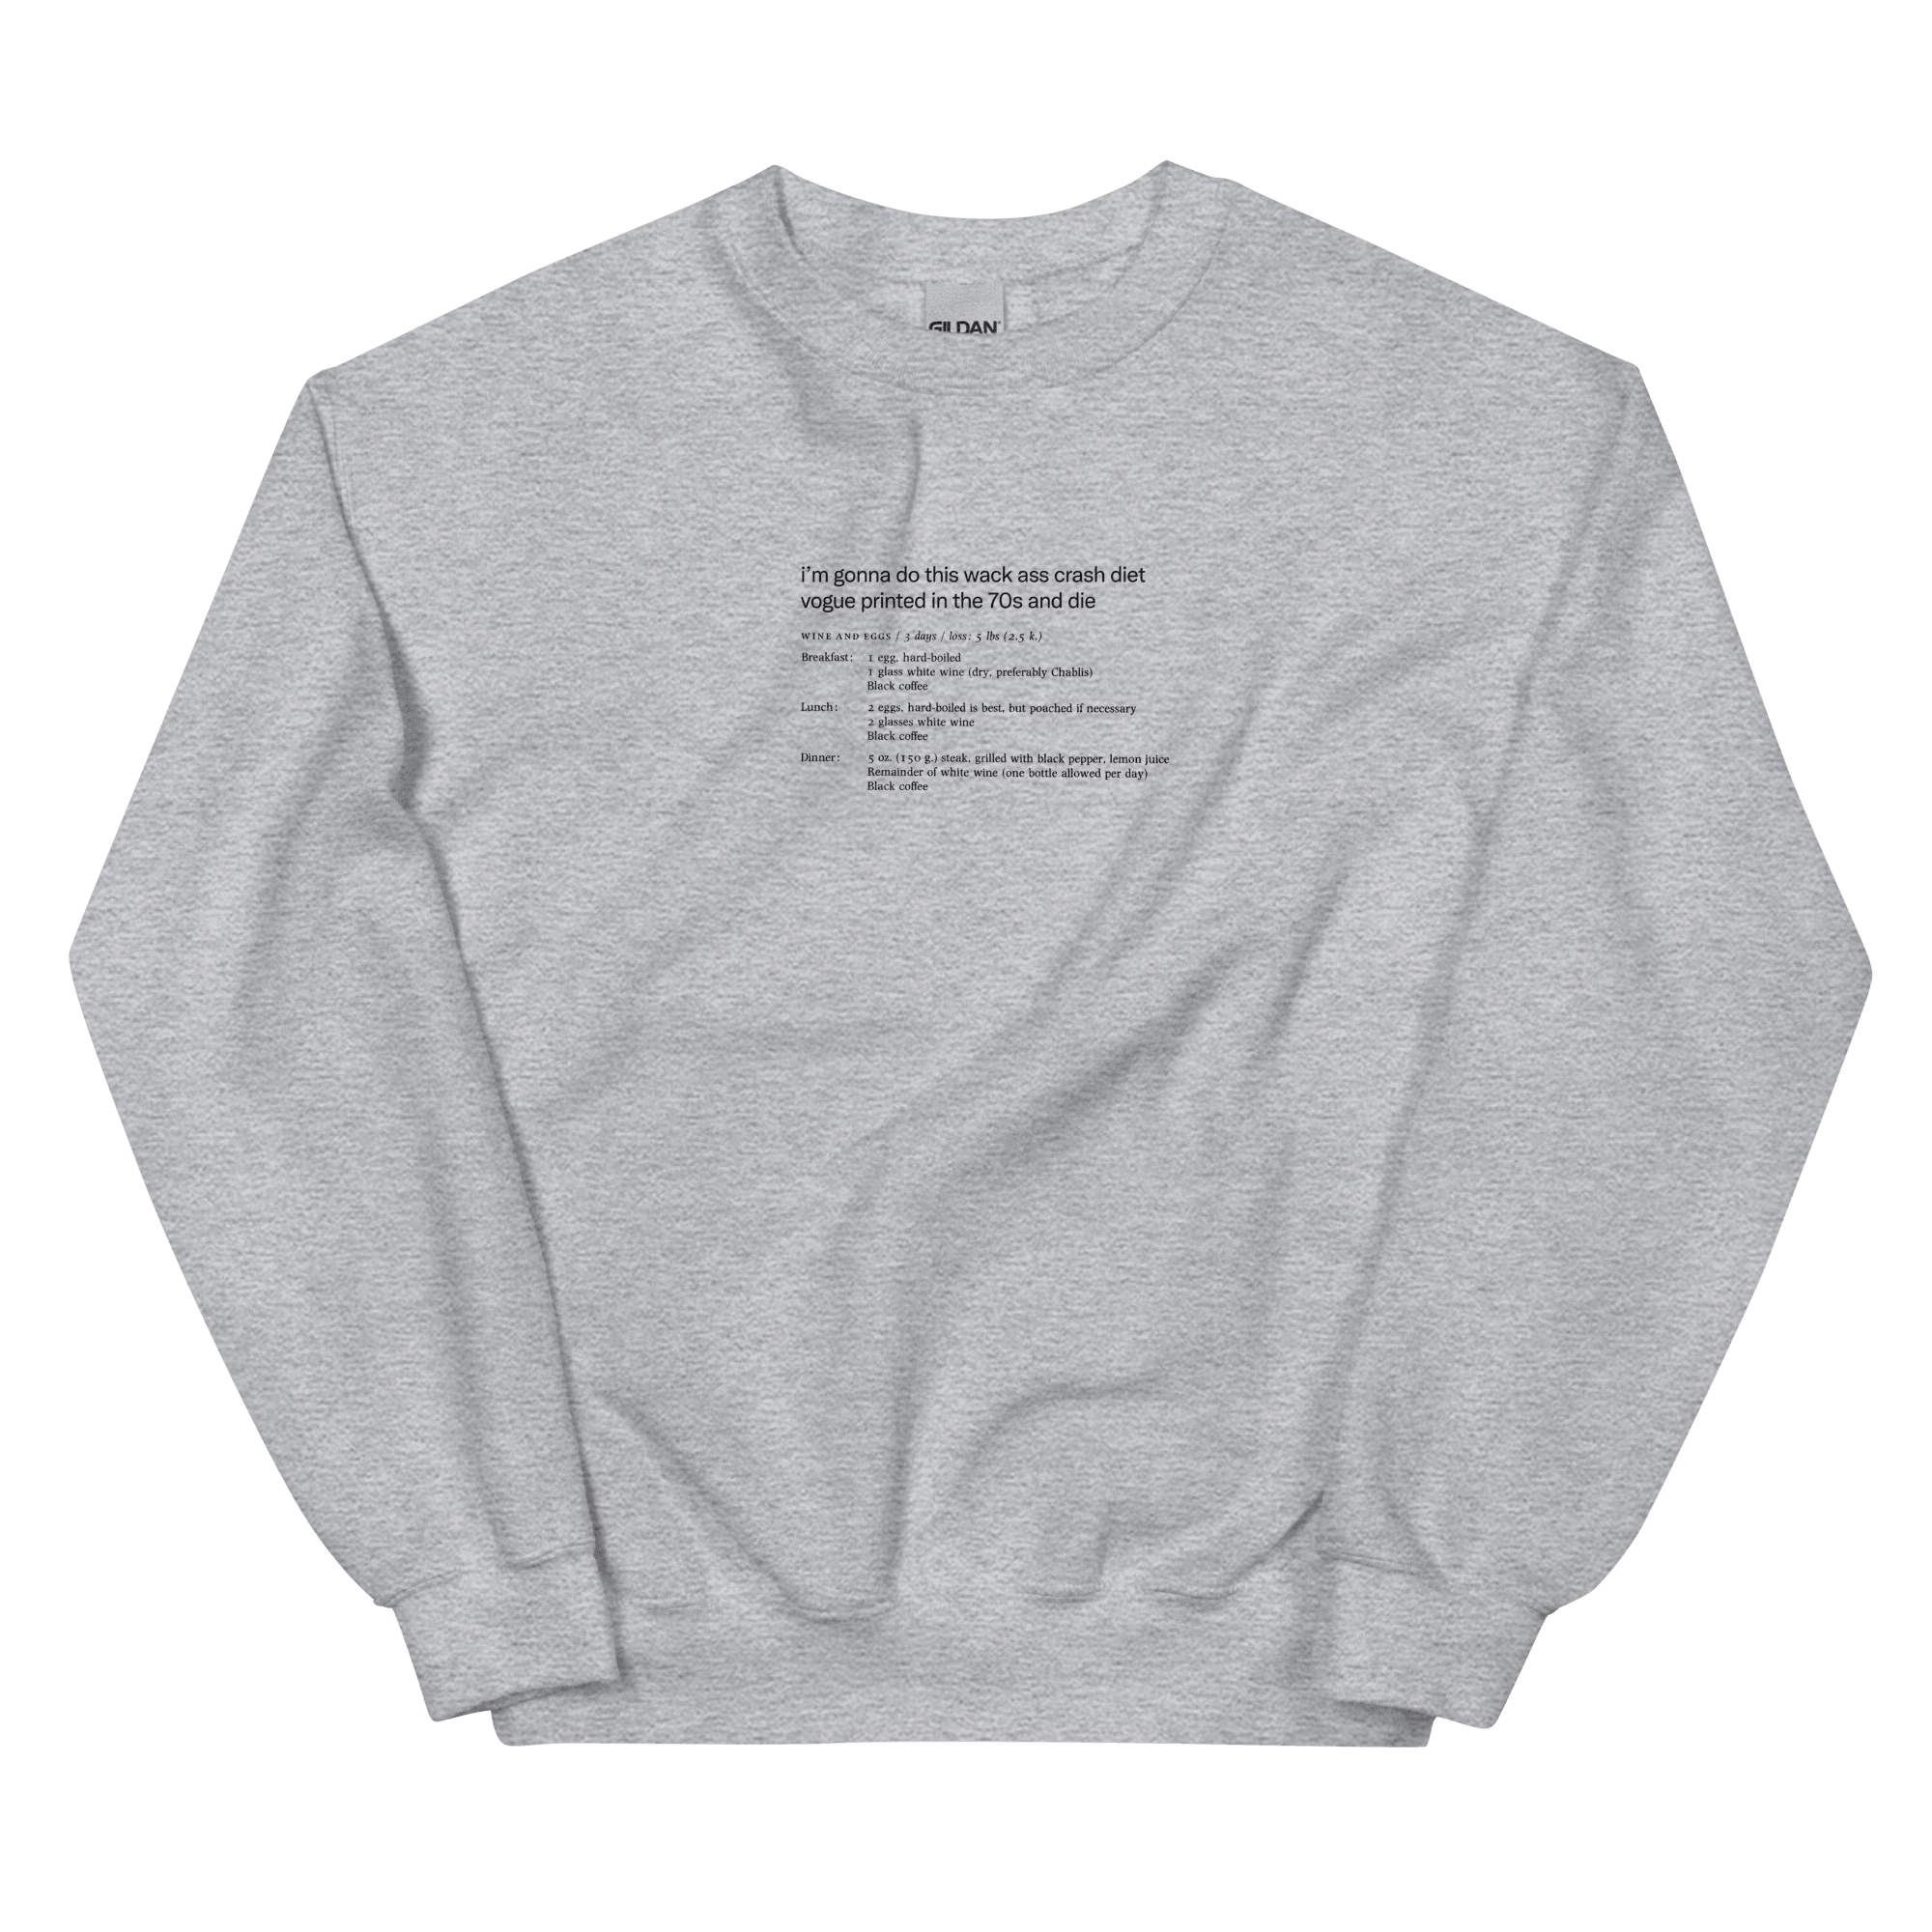 Whack Ass Vogue Crash Diet Shirt Sweatshirt - Polychrome Goods 🍊